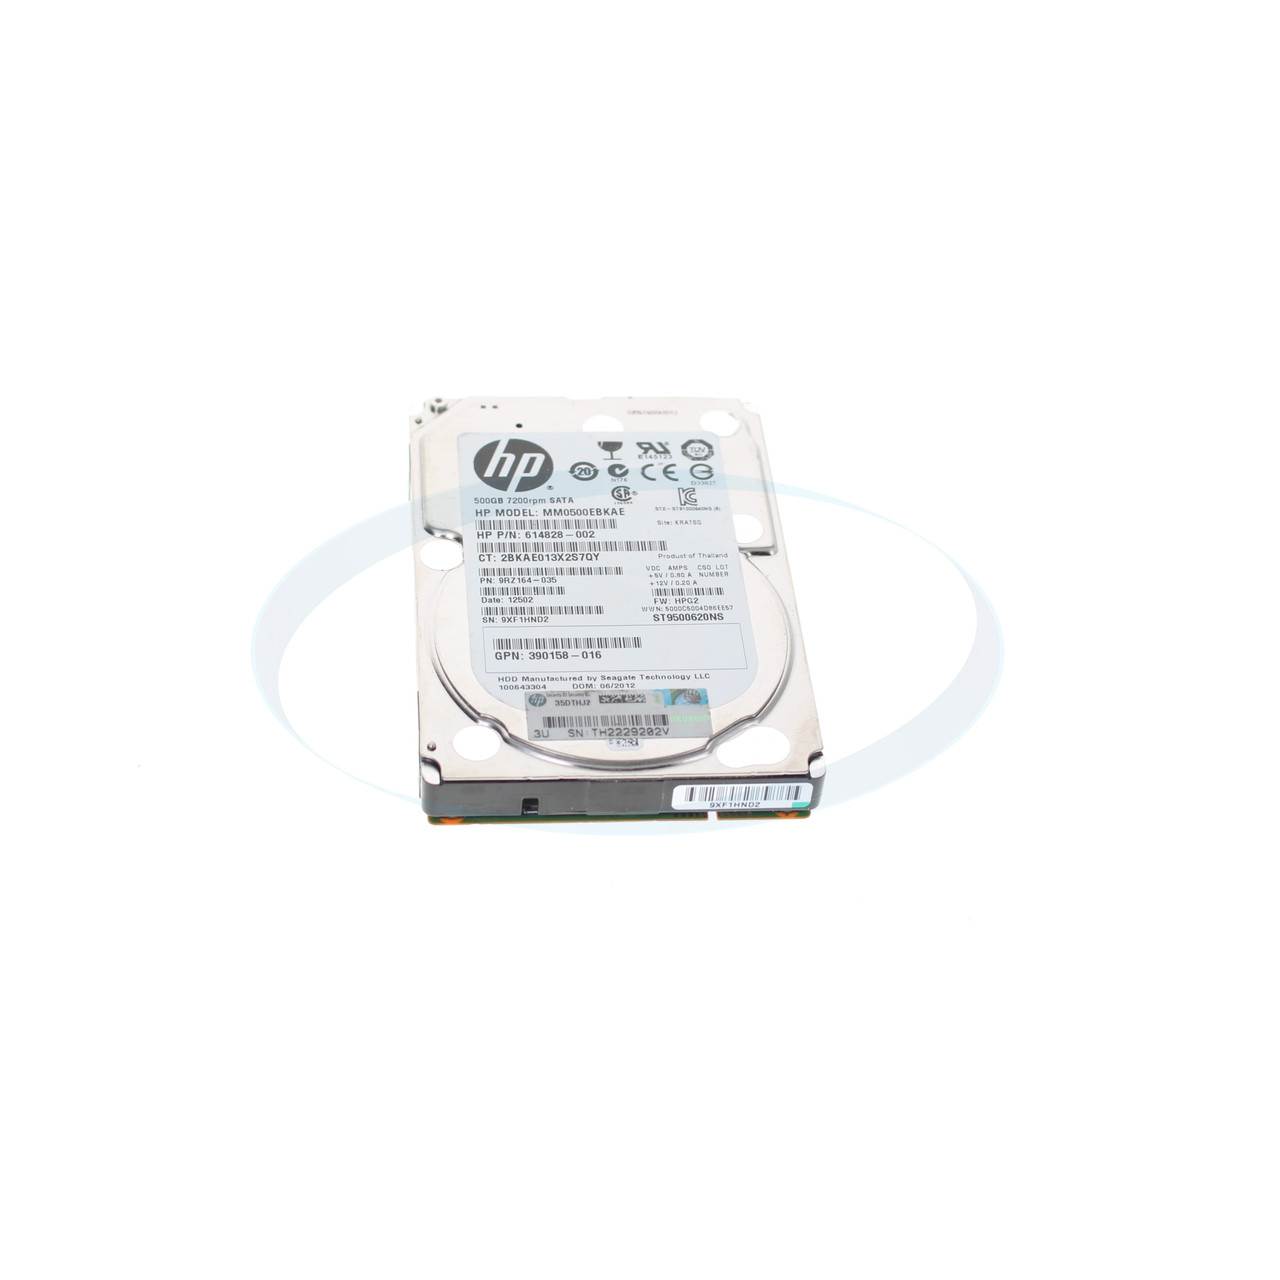 HP 614828-002 500GB 7.2K 3G 2.5" SATA Hard Drive